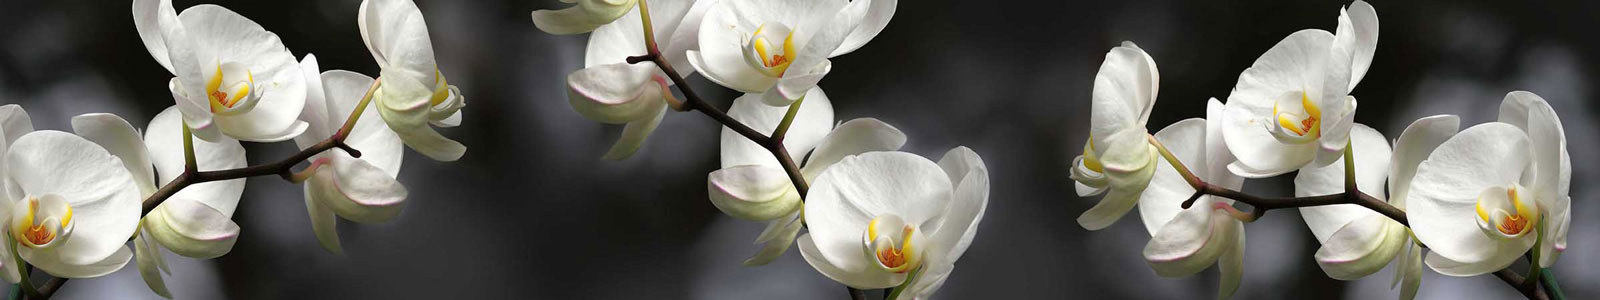 №3152 - Ветка белой орхидеи на темном фоне